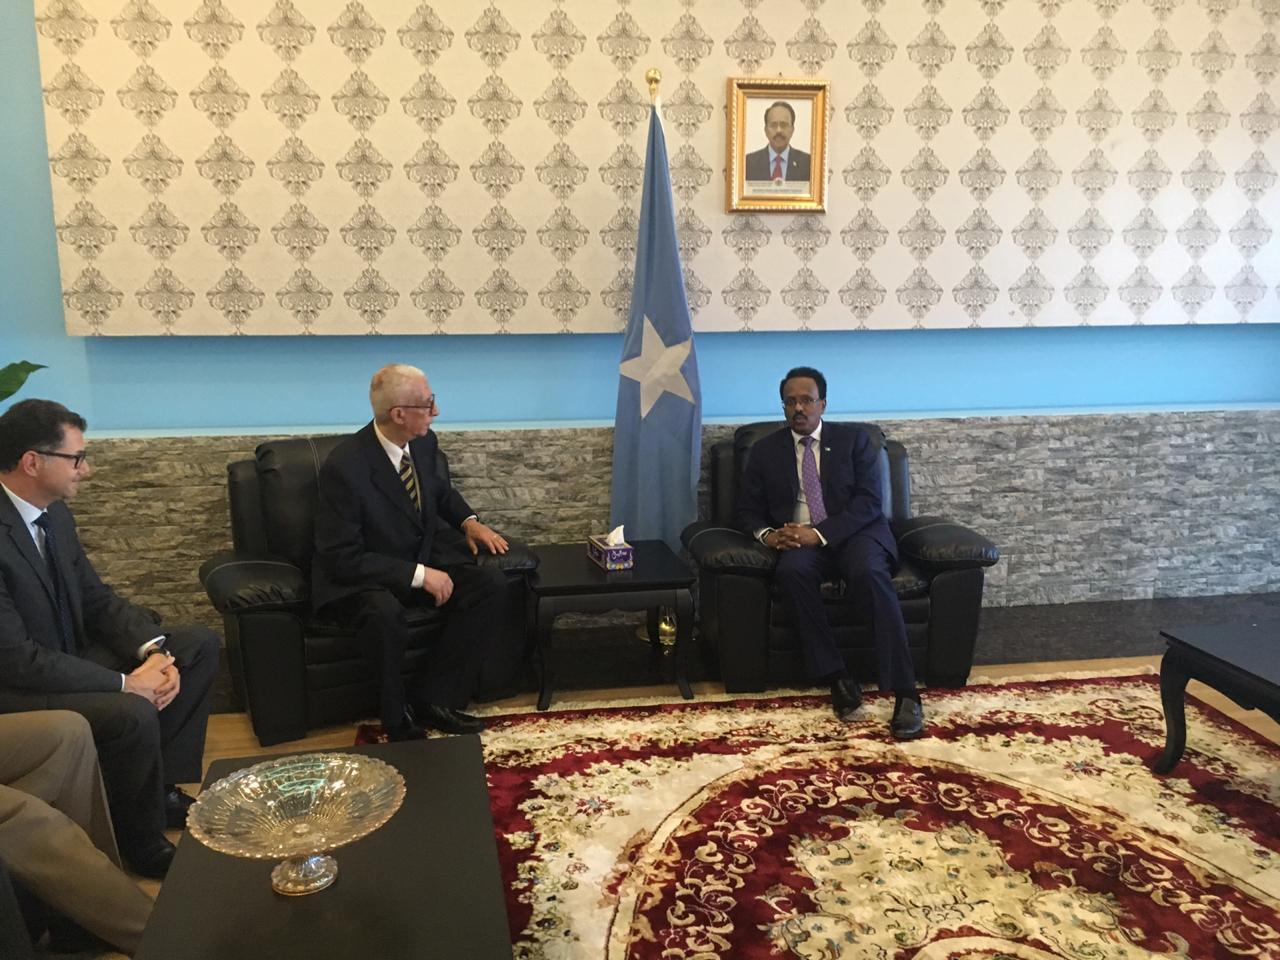   نائب وزير الخارجية للشئون الأفريقية يلتقي الرئيس الصومالي في مستهل زيارته إلى مقديشيو